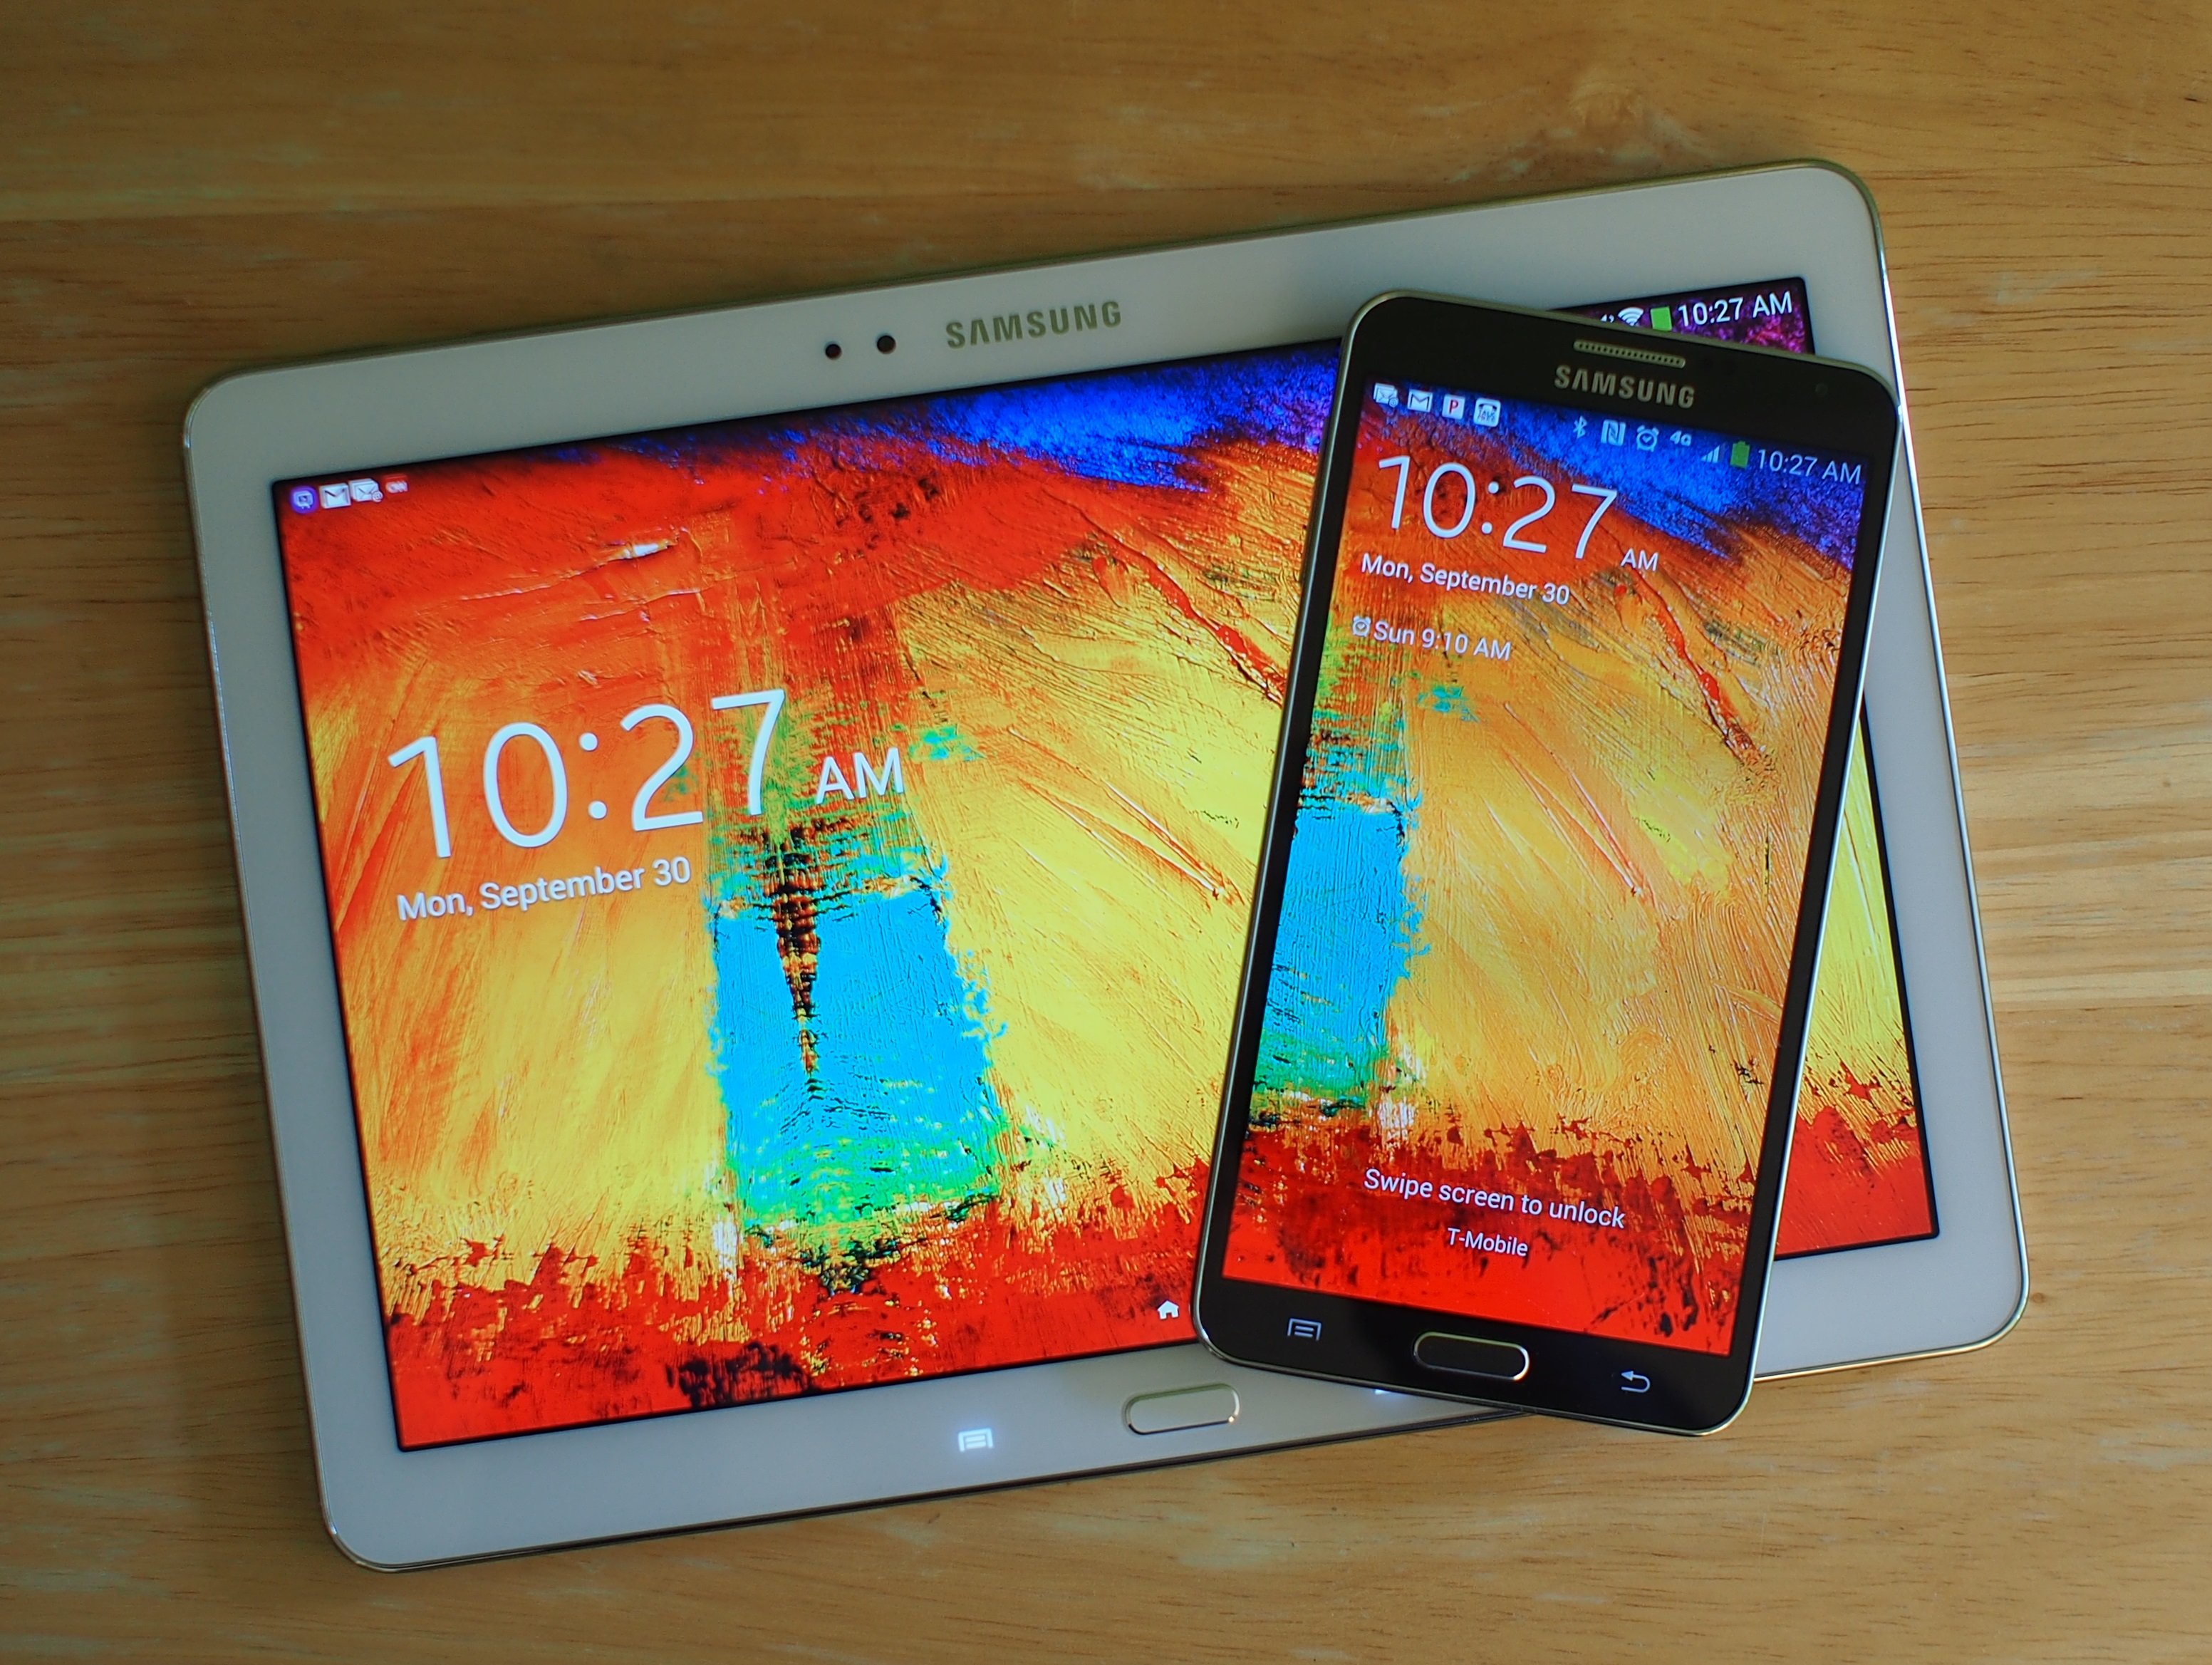 Zeep Handig tolerantie Samsung Galaxy Note 10.1 2014 Edition Review